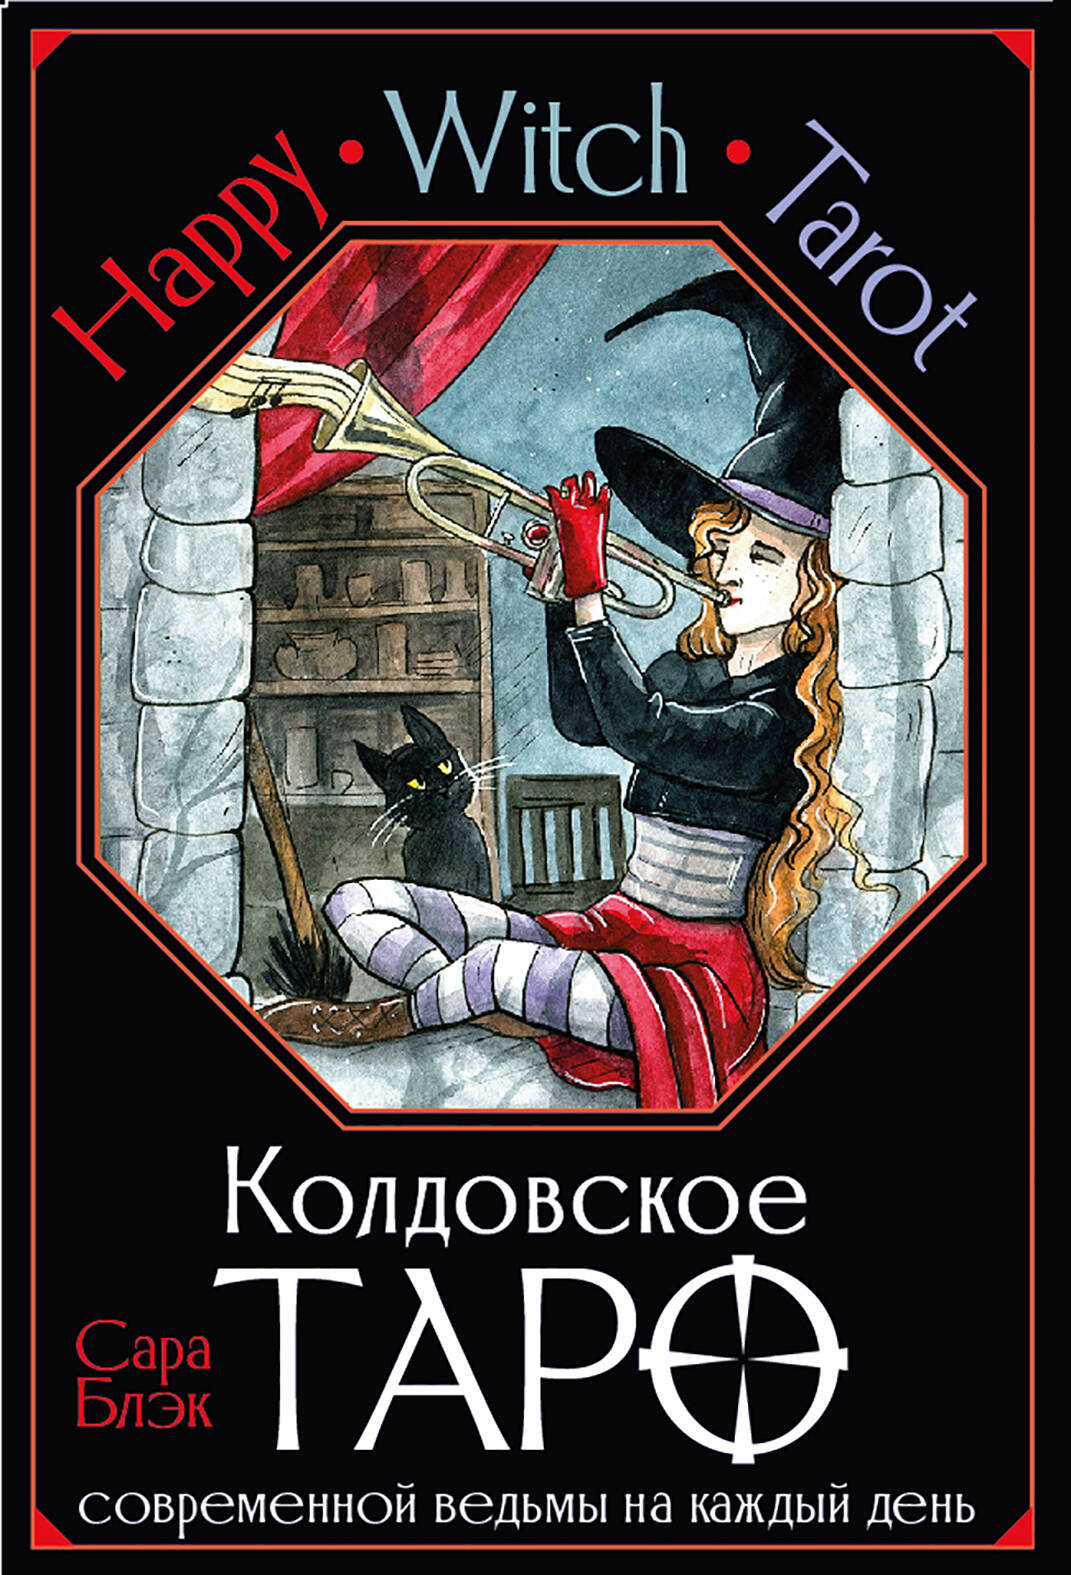 Блэк Сара Happy Witch Tarot. Колдовское Таро современной ведьмы на каждый день (78 карт+инструкция) white witch tarot